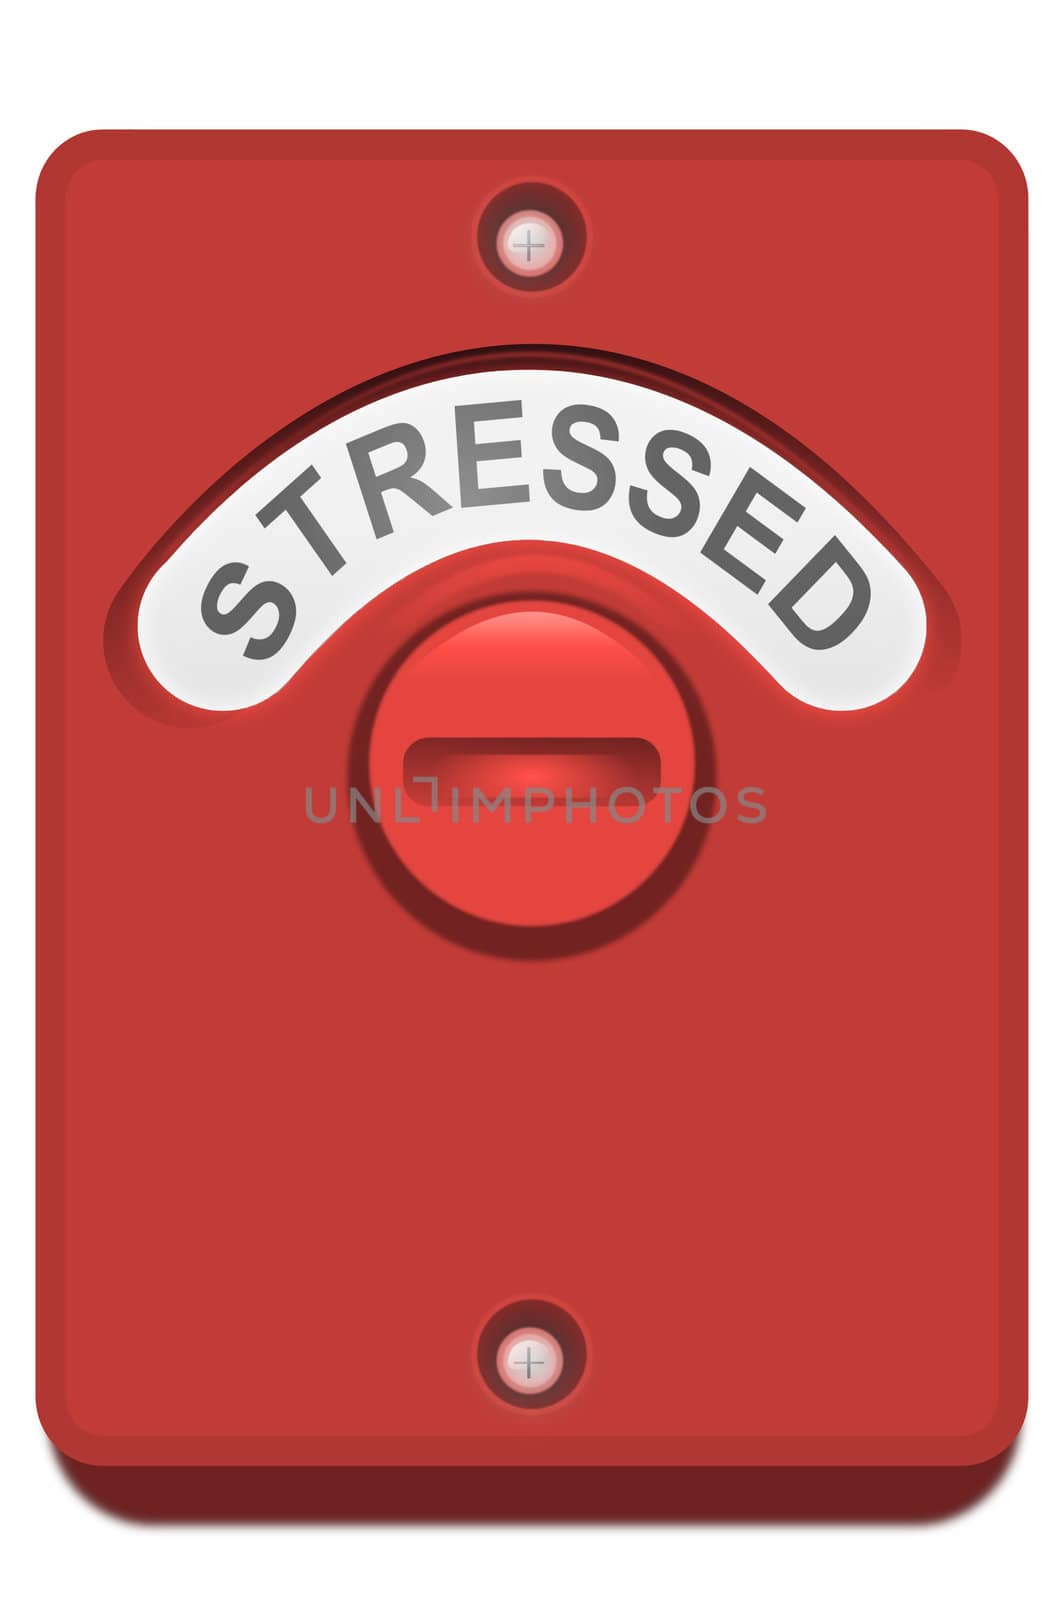 Locked in stress. by 72soul